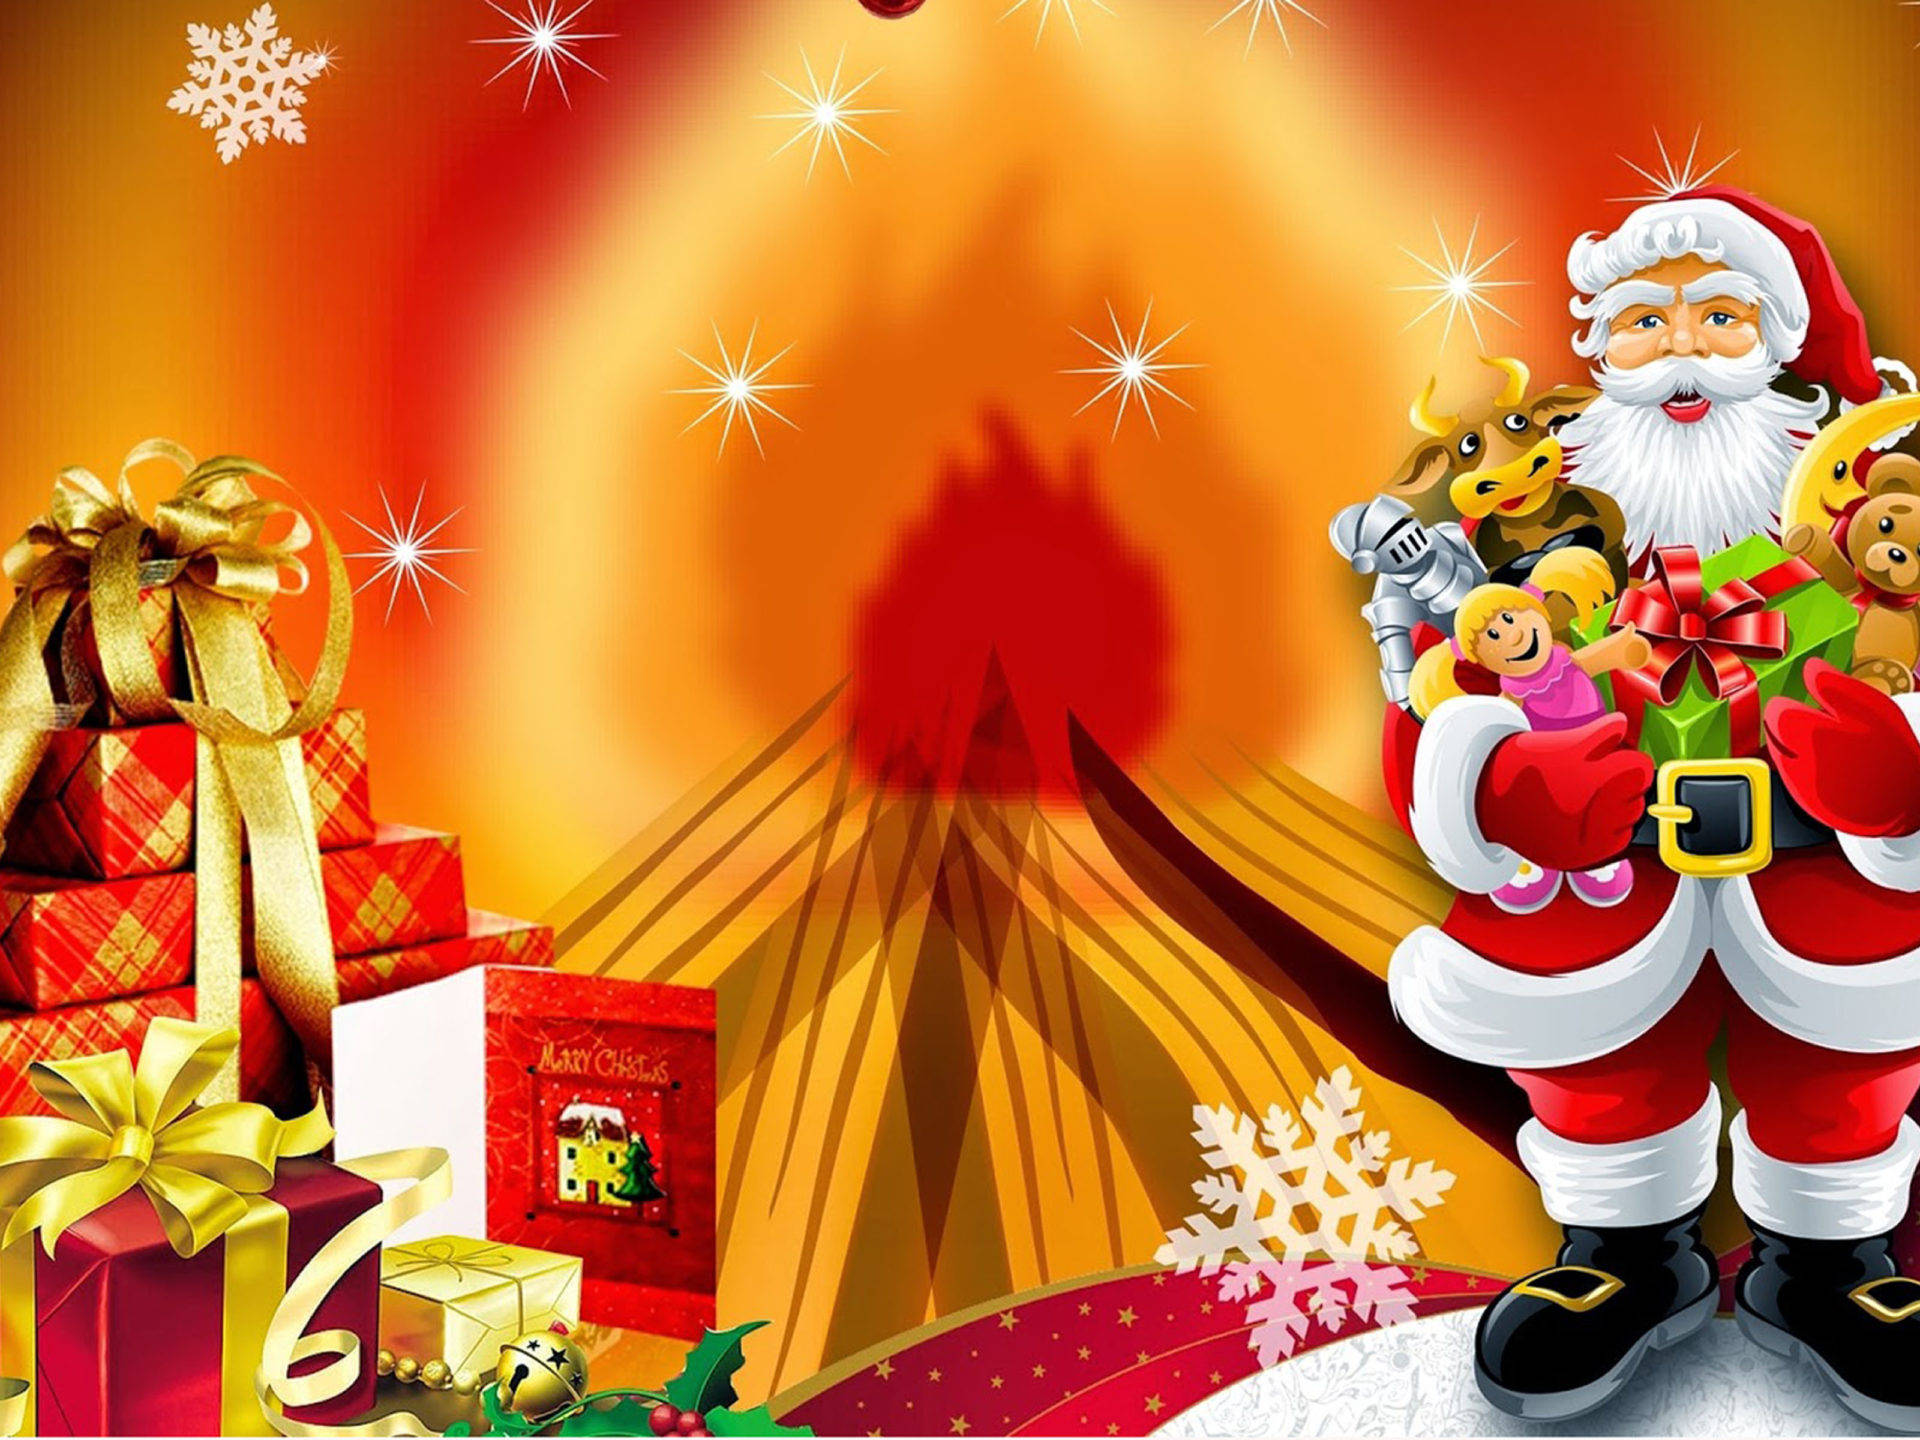 Santa Claus And Christmas Presents